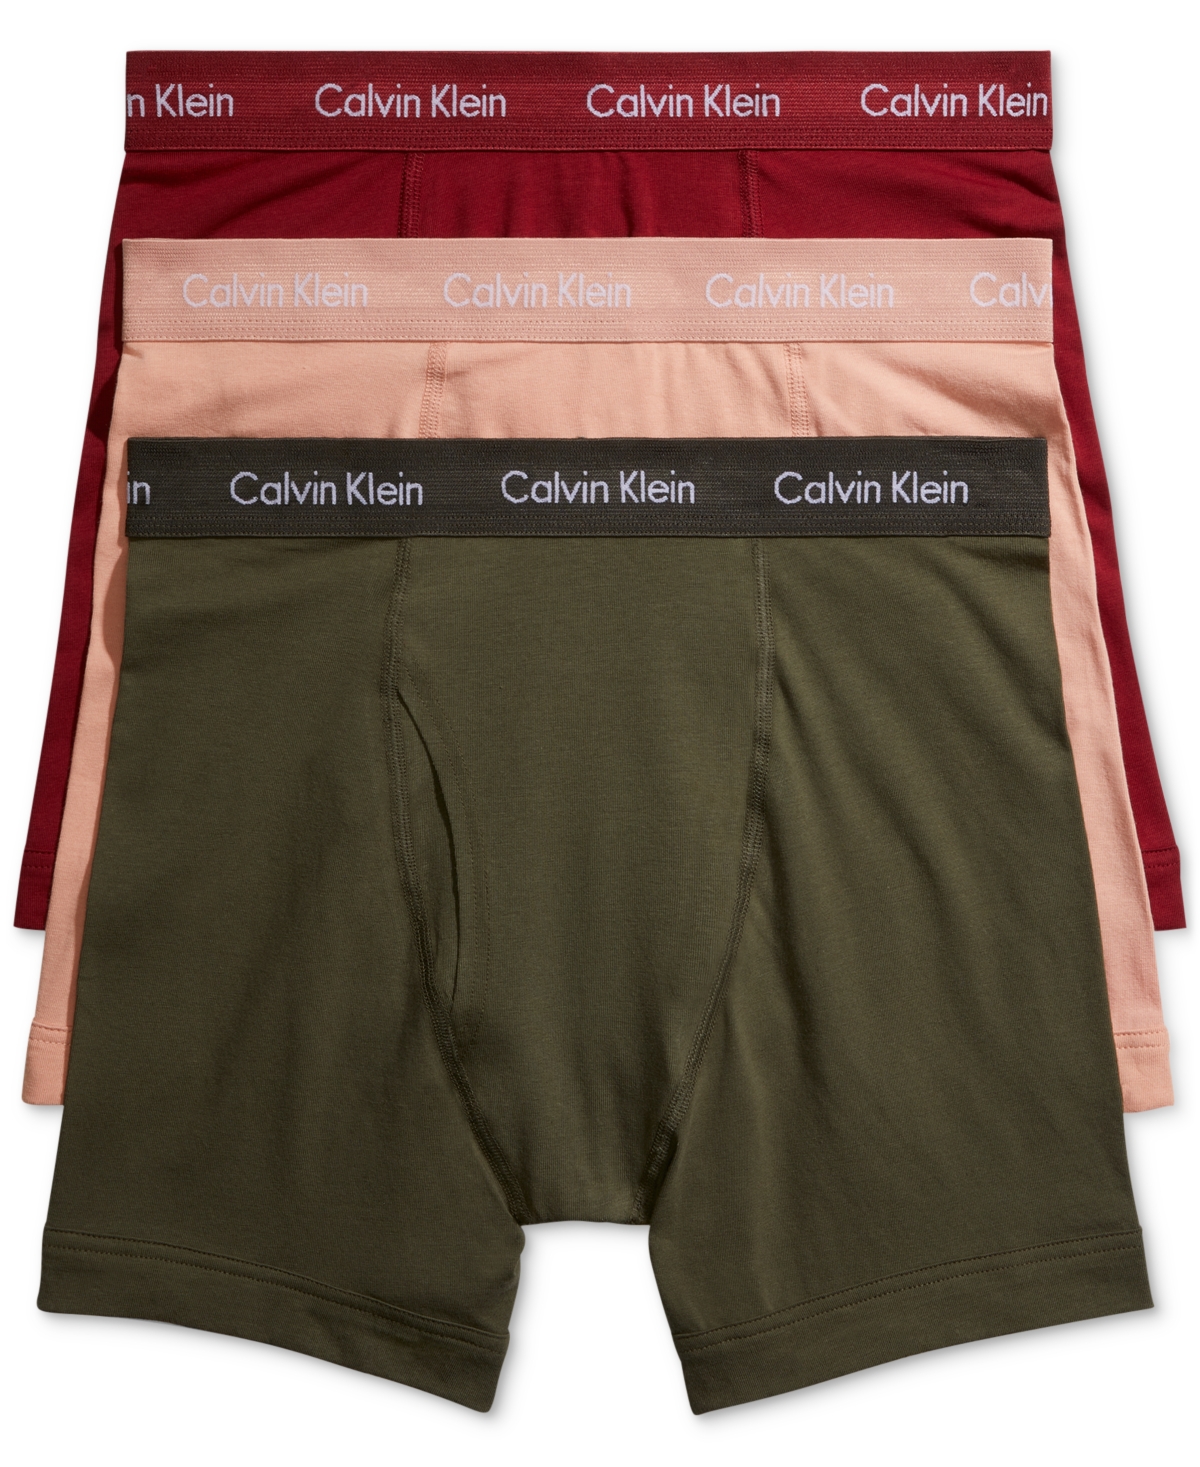 CALVIN KLEIN MEN'S 3-PACK COTTON STRETCH BOXER BRIEFS